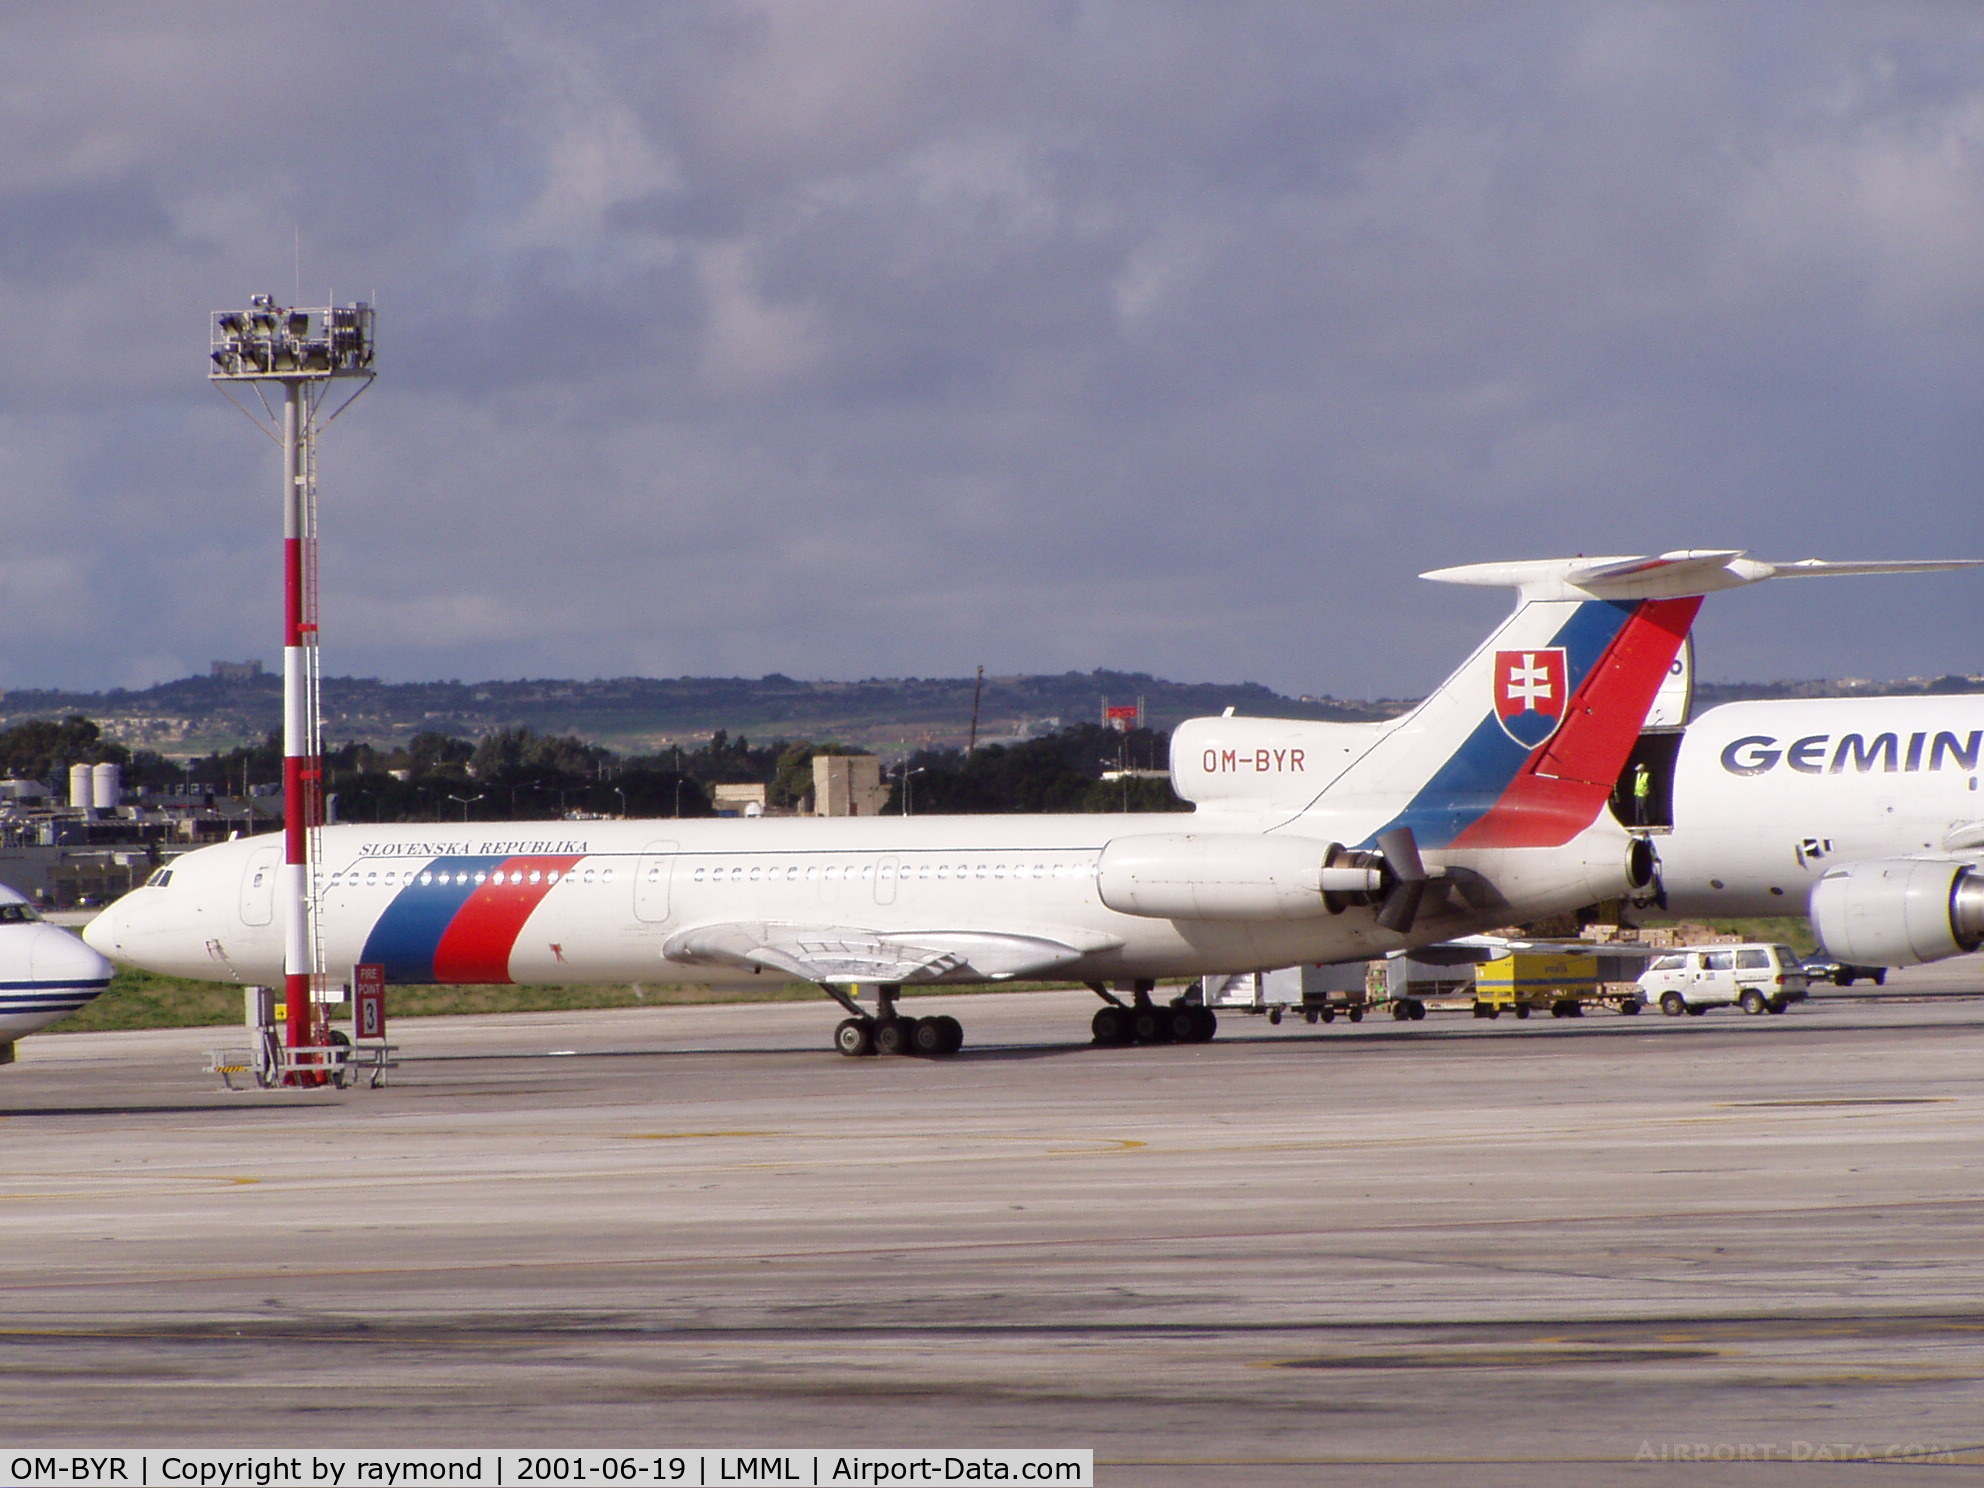 OM-BYR, 1998 Tupolev Tu-154M C/N 98A1012, Slovak Republic Tu154 OM-BYR on Park9 Malta International Airport.